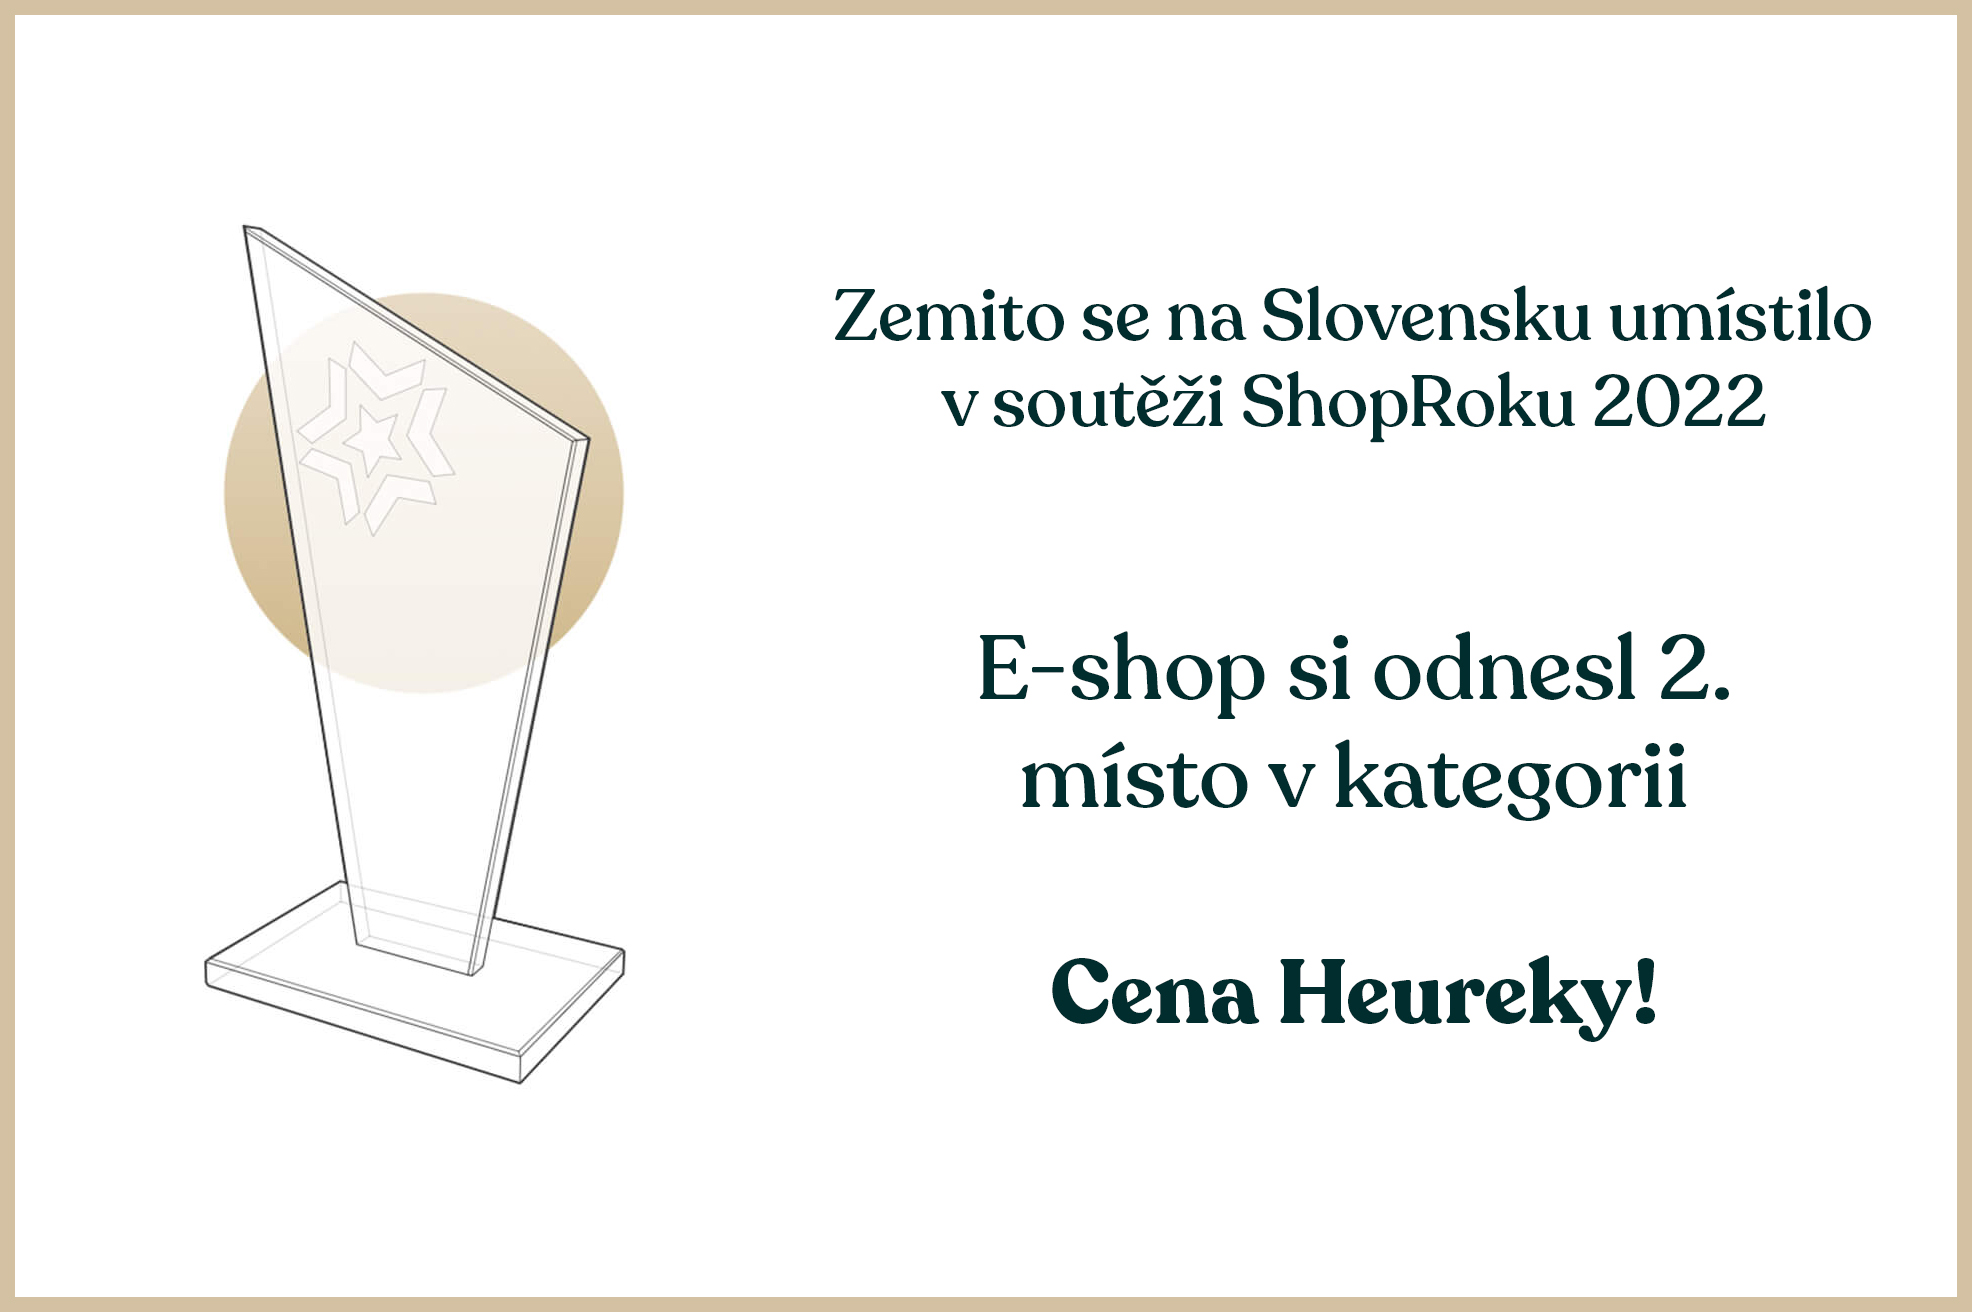 Zemito.sk získává cenu Heureky!